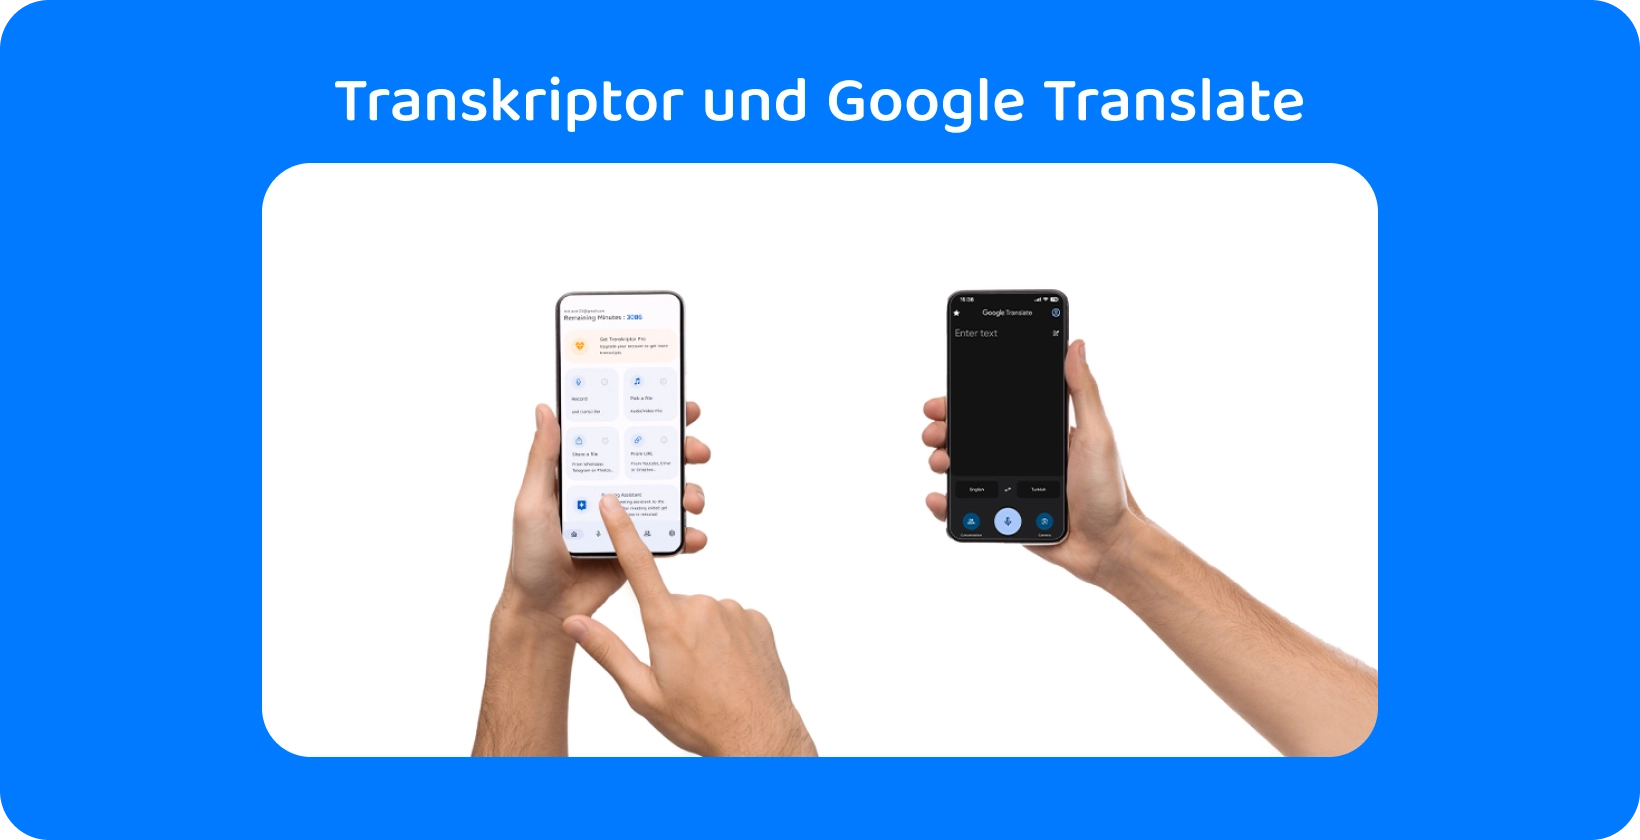 Zwei Hände, die Smartphones mit Transkriptor und Google Translate halten und Audiotranskription und -übersetzung demonstrieren.